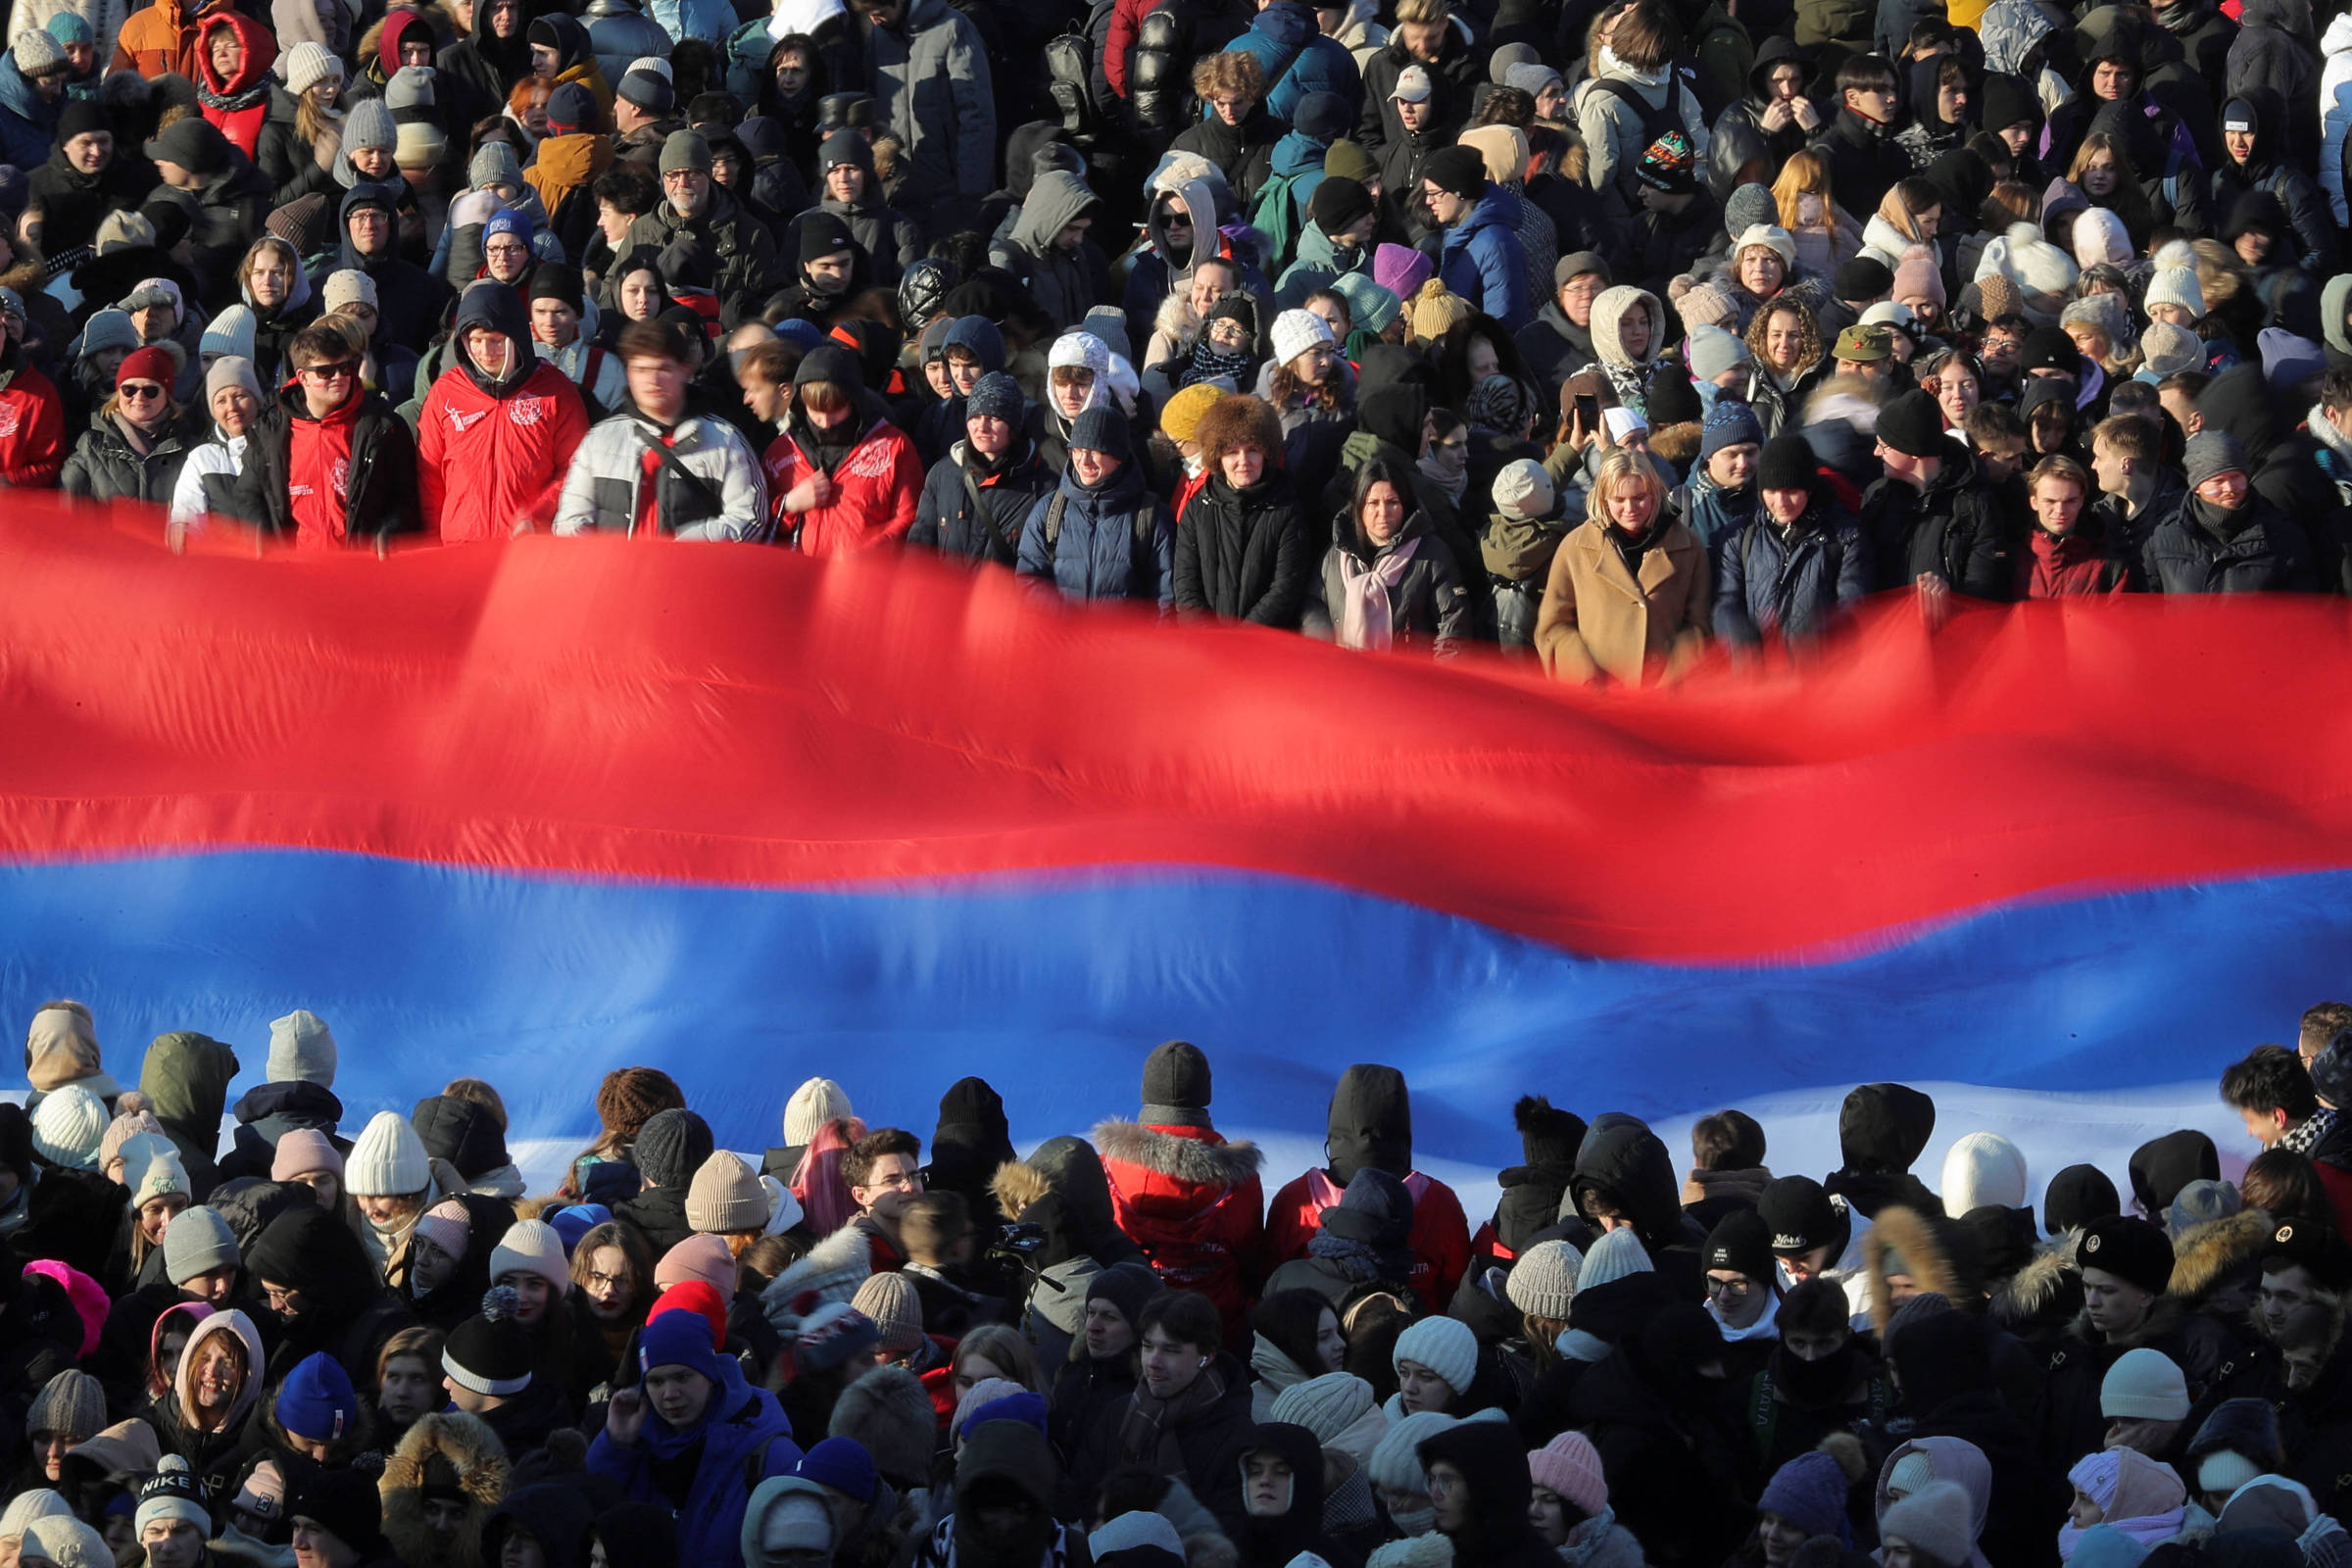 Aprenda sobre a bandeira da Rússia: história e mudanças